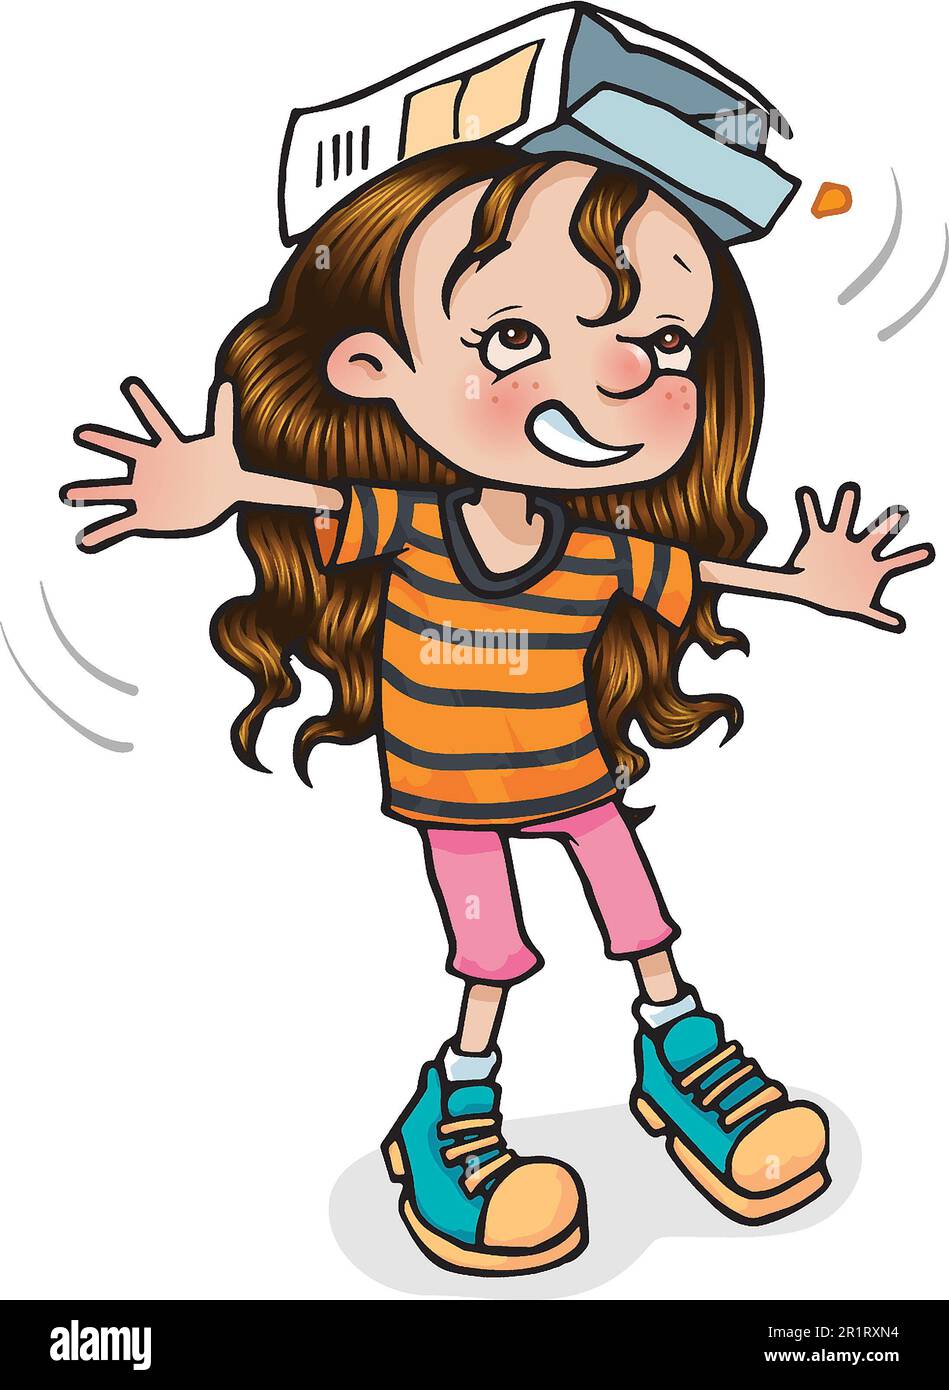 Art Cartoon-Illustration eines jungen Mädchens im Alter von 5 bis 7 Jahren, balanciert eine Kiste auf ihrem Kopf, lernt durch Spiel, Bewegung, Beweglichkeit, Koordination, Karosseriesteuerung. Stockfoto